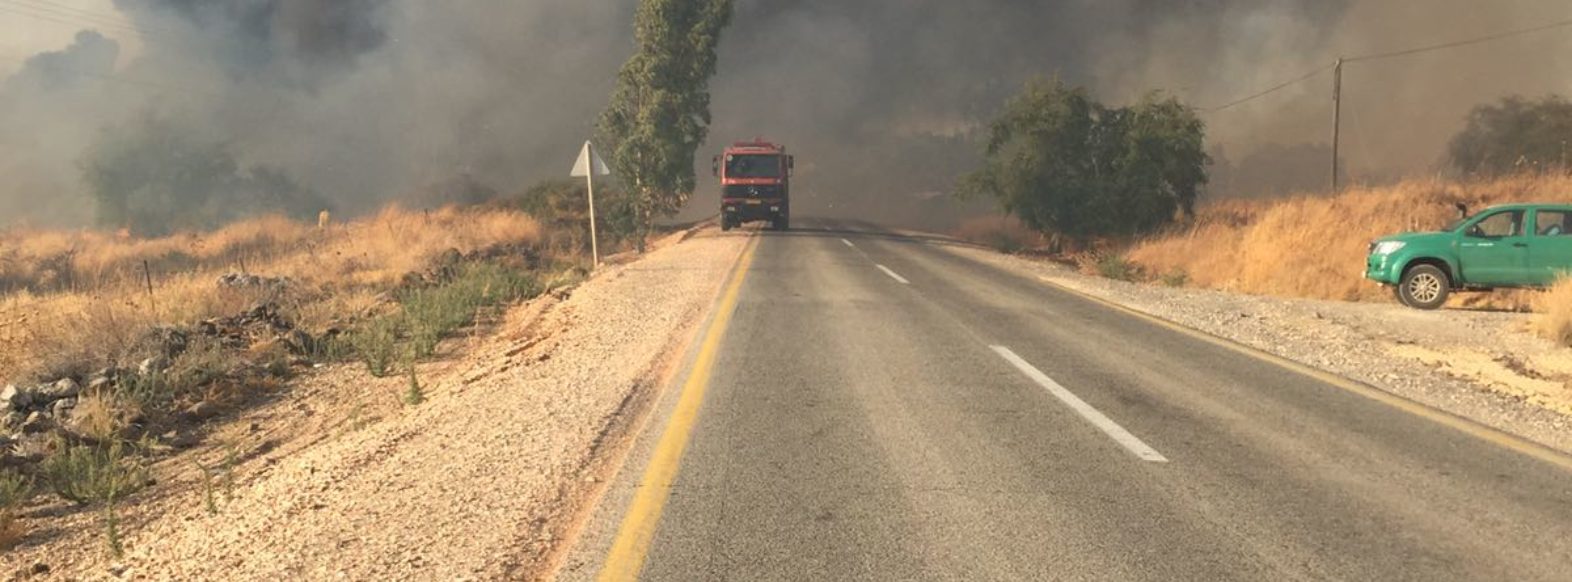 בית היערן בחיפה-שריפת חורש-צוותי כב”א במקום בתגבור מטוסים